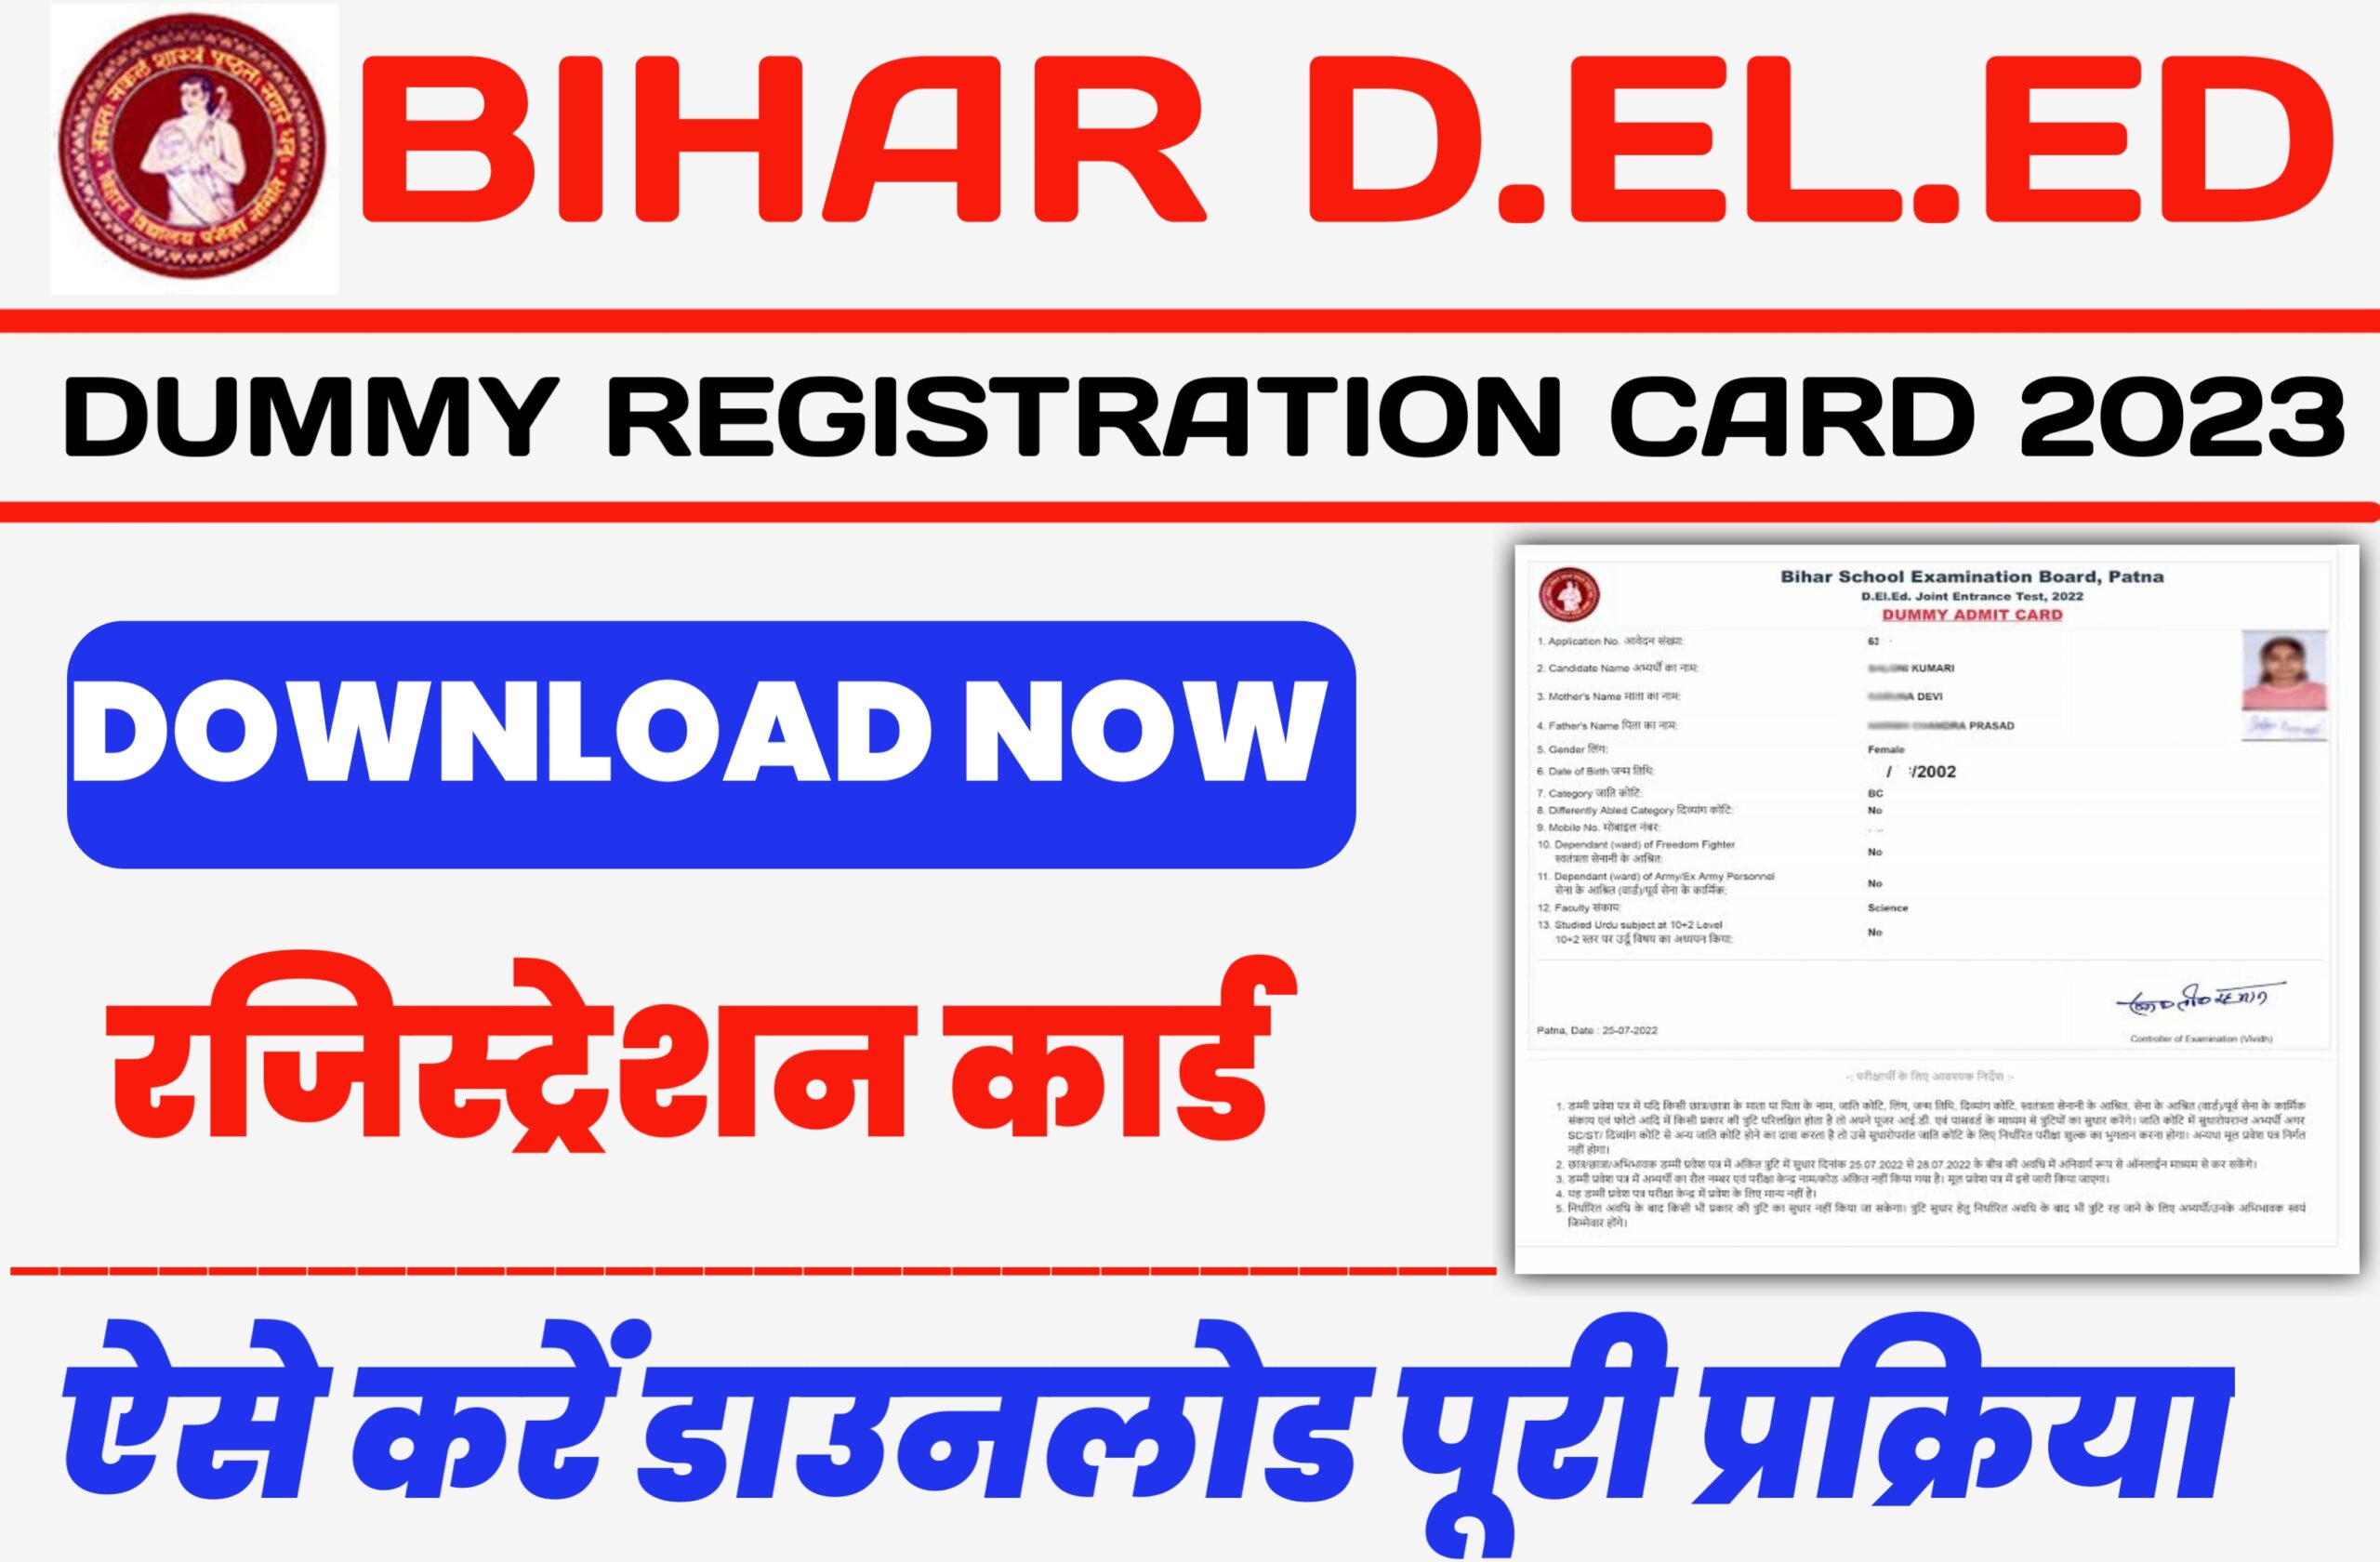 Bihar Deled Dummy Registration Card 2023